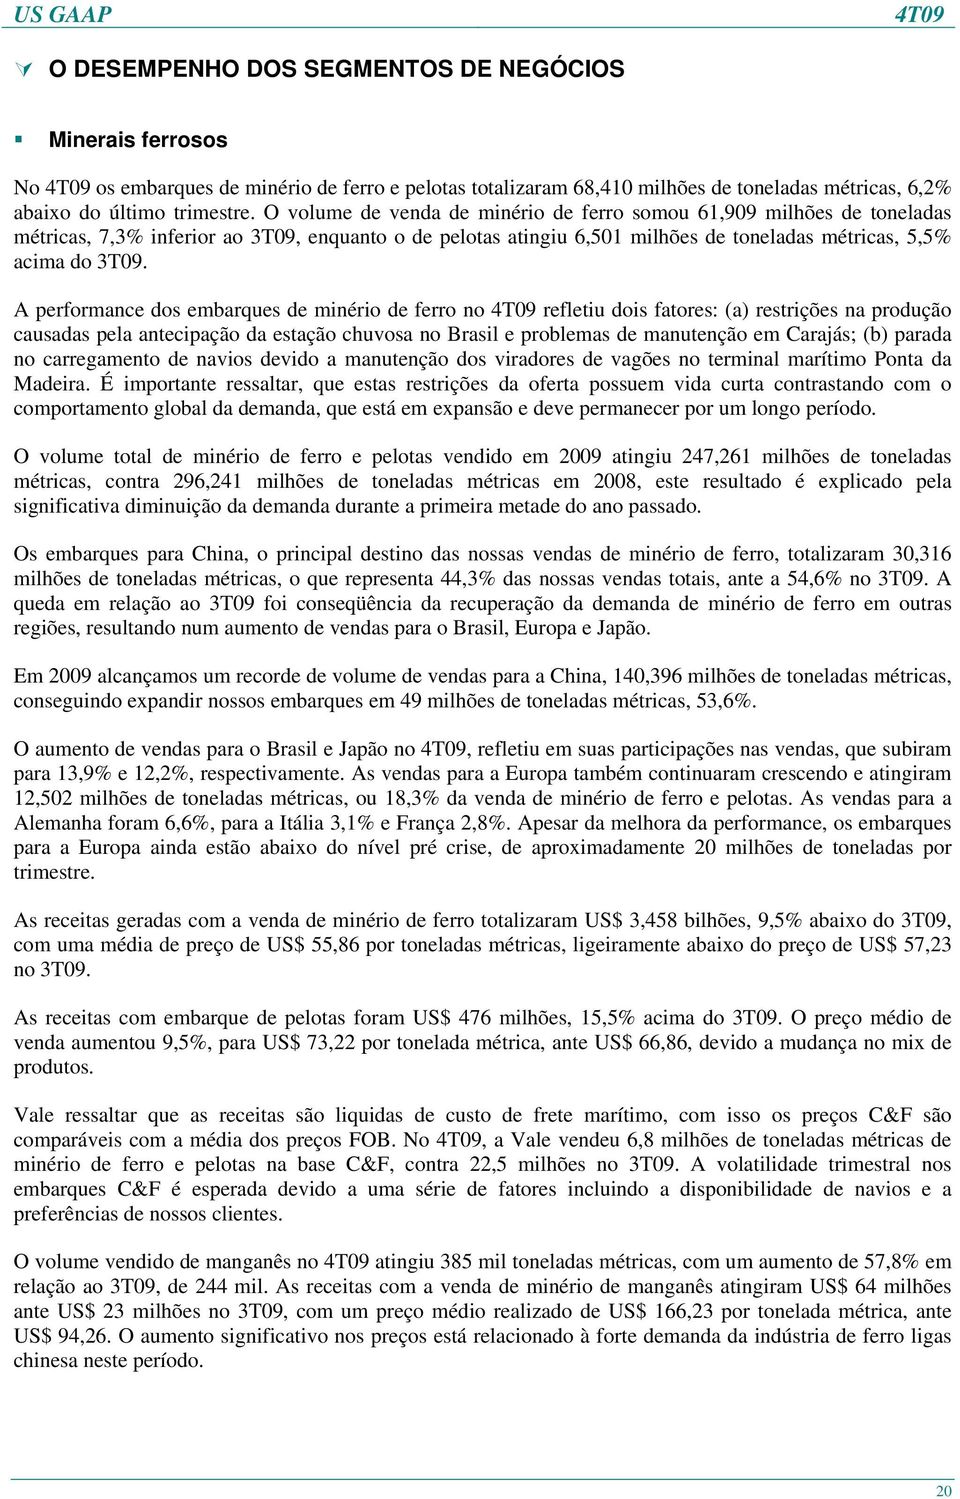 A performance dos embarques de minério de ferro no refletiu dois fatores: (a) restrições na produção causadas pela antecipação da estação chuvosa no Brasil e problemas de manutenção em Carajás; (b)